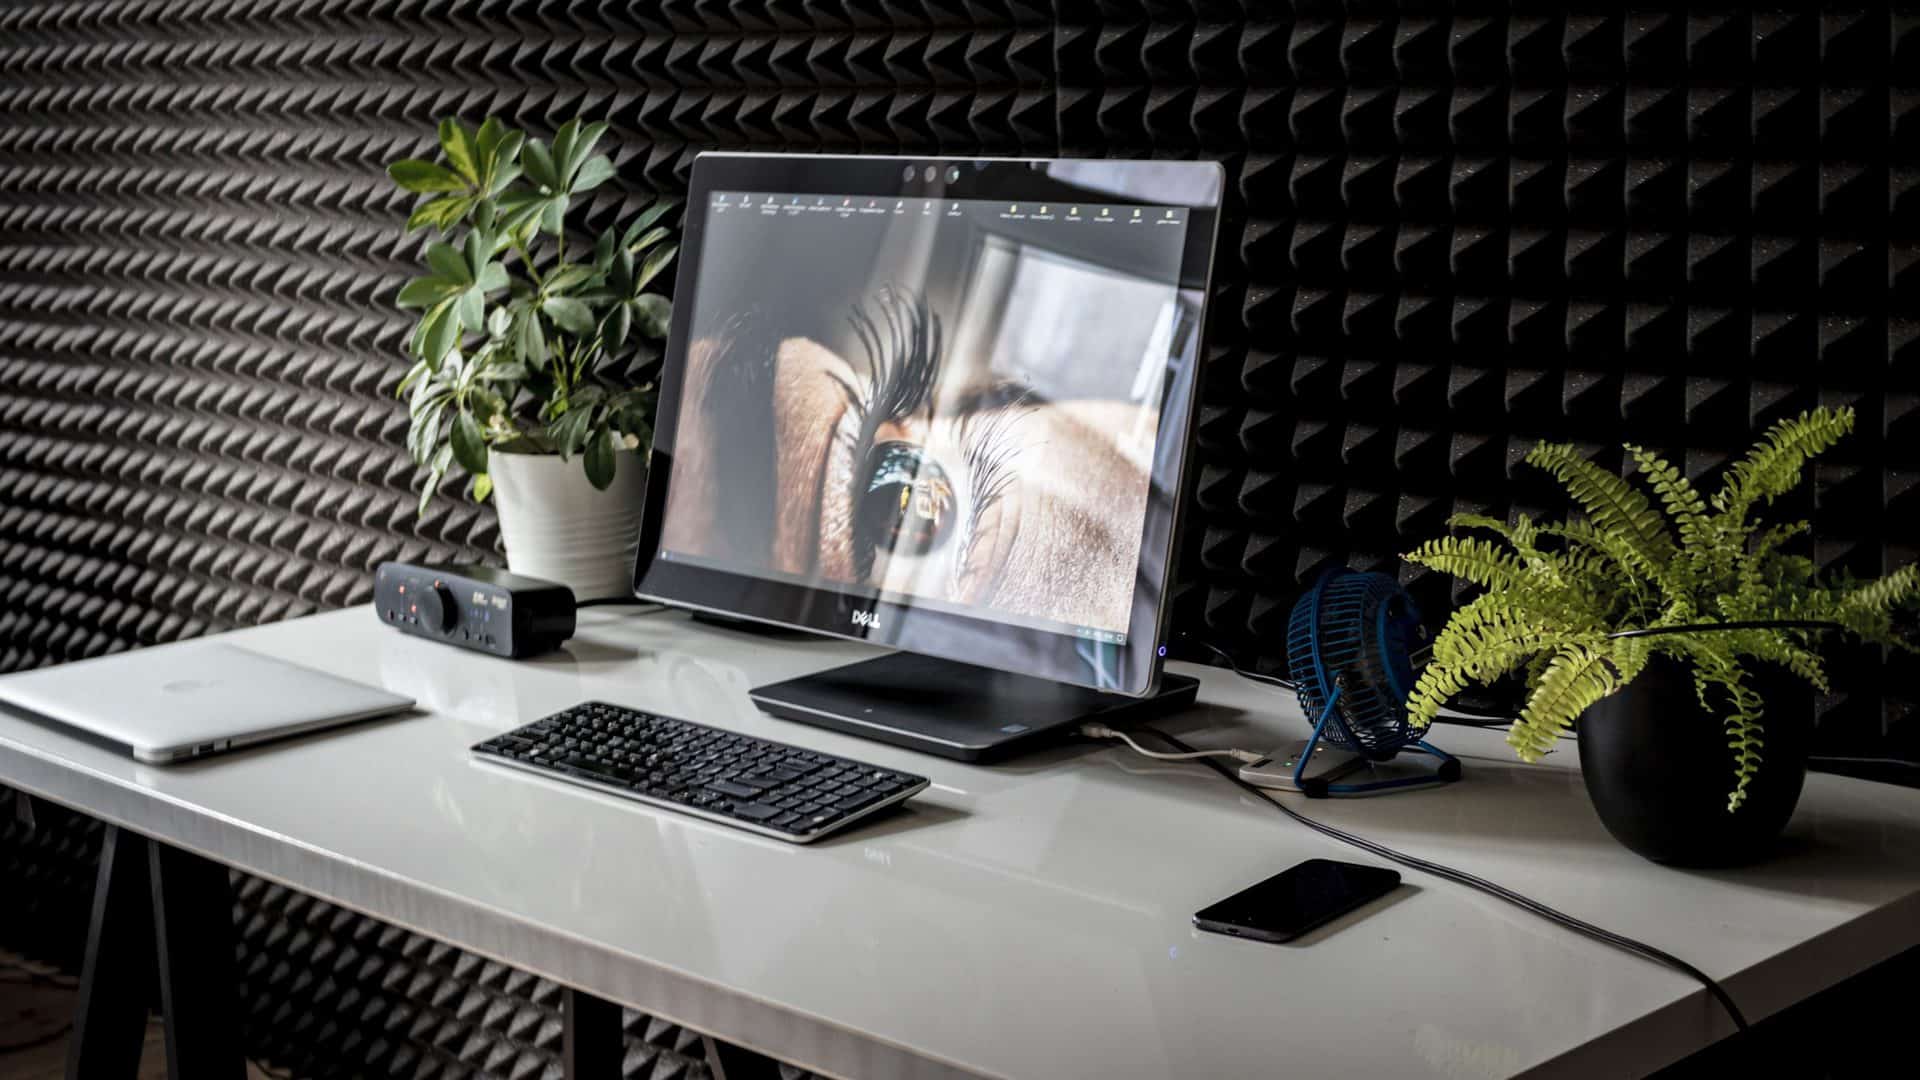 Zwarte Dell computer op een bureau. Op het scherm is een ingezoomd oog te zien. Op het bureau staan twee plantjes, een laptop, een telefoon en kabels. De wand is zwart. 